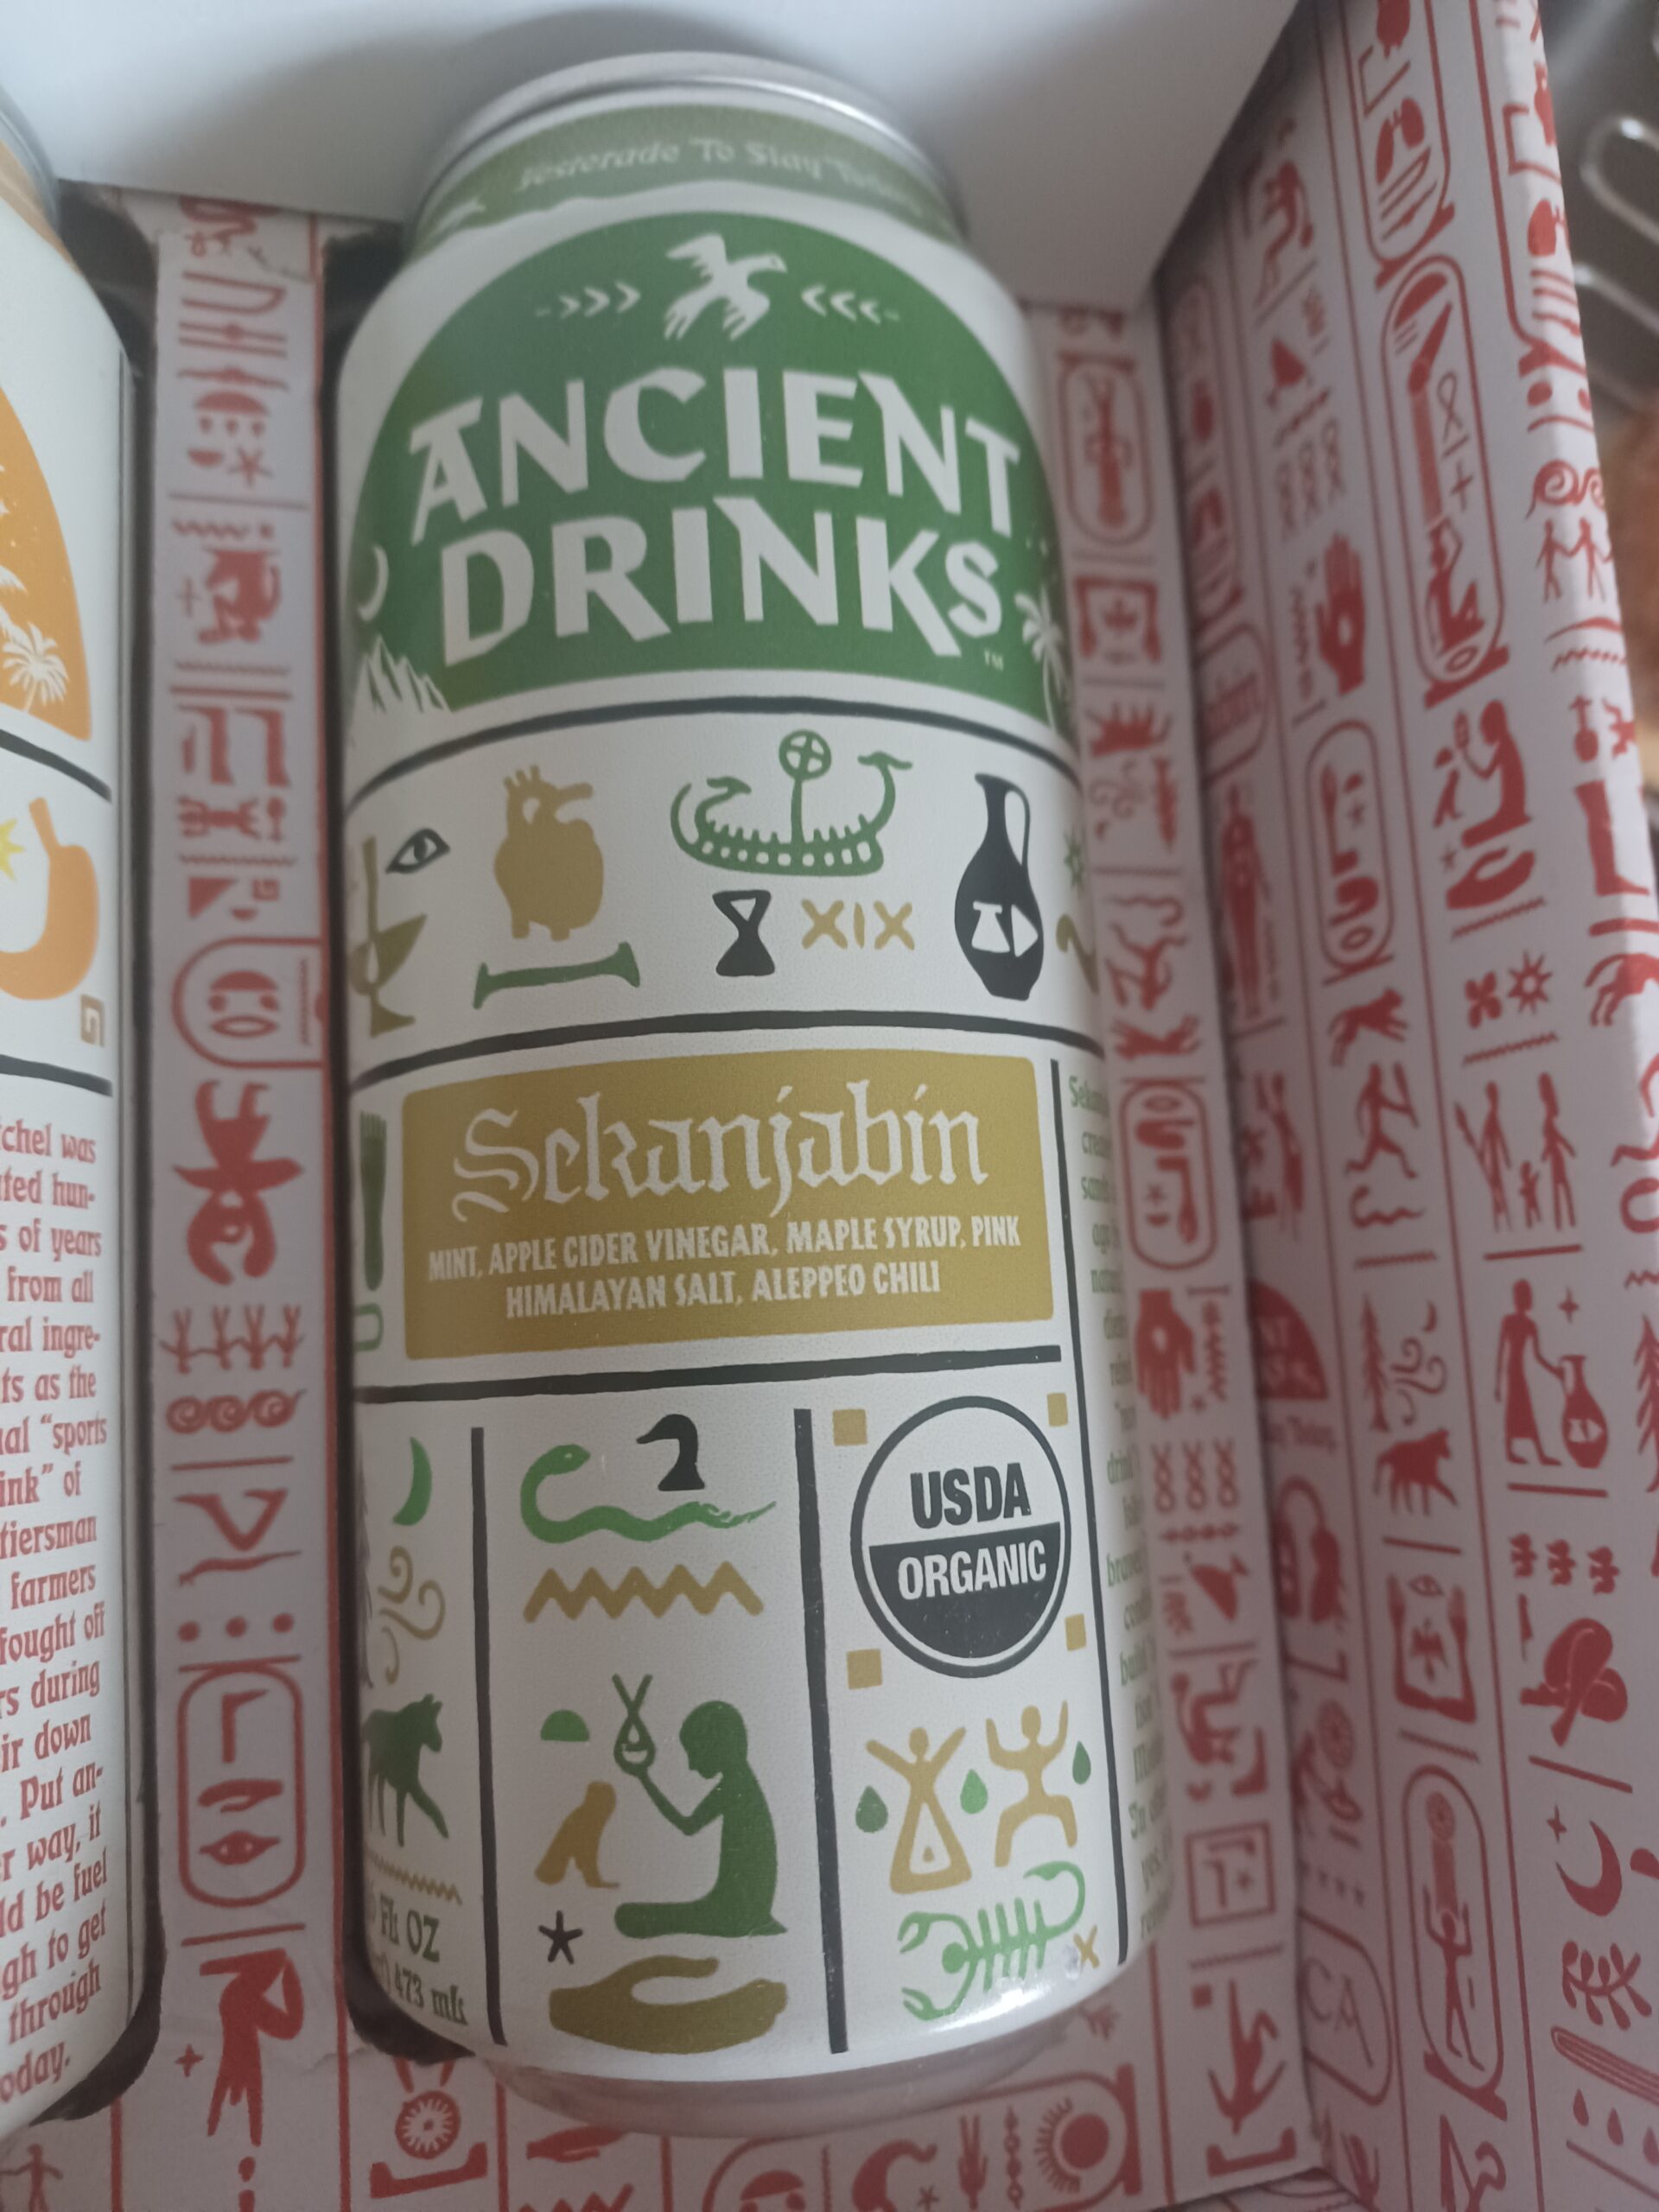 Ancient Drinks Sckanjabin drink review. 